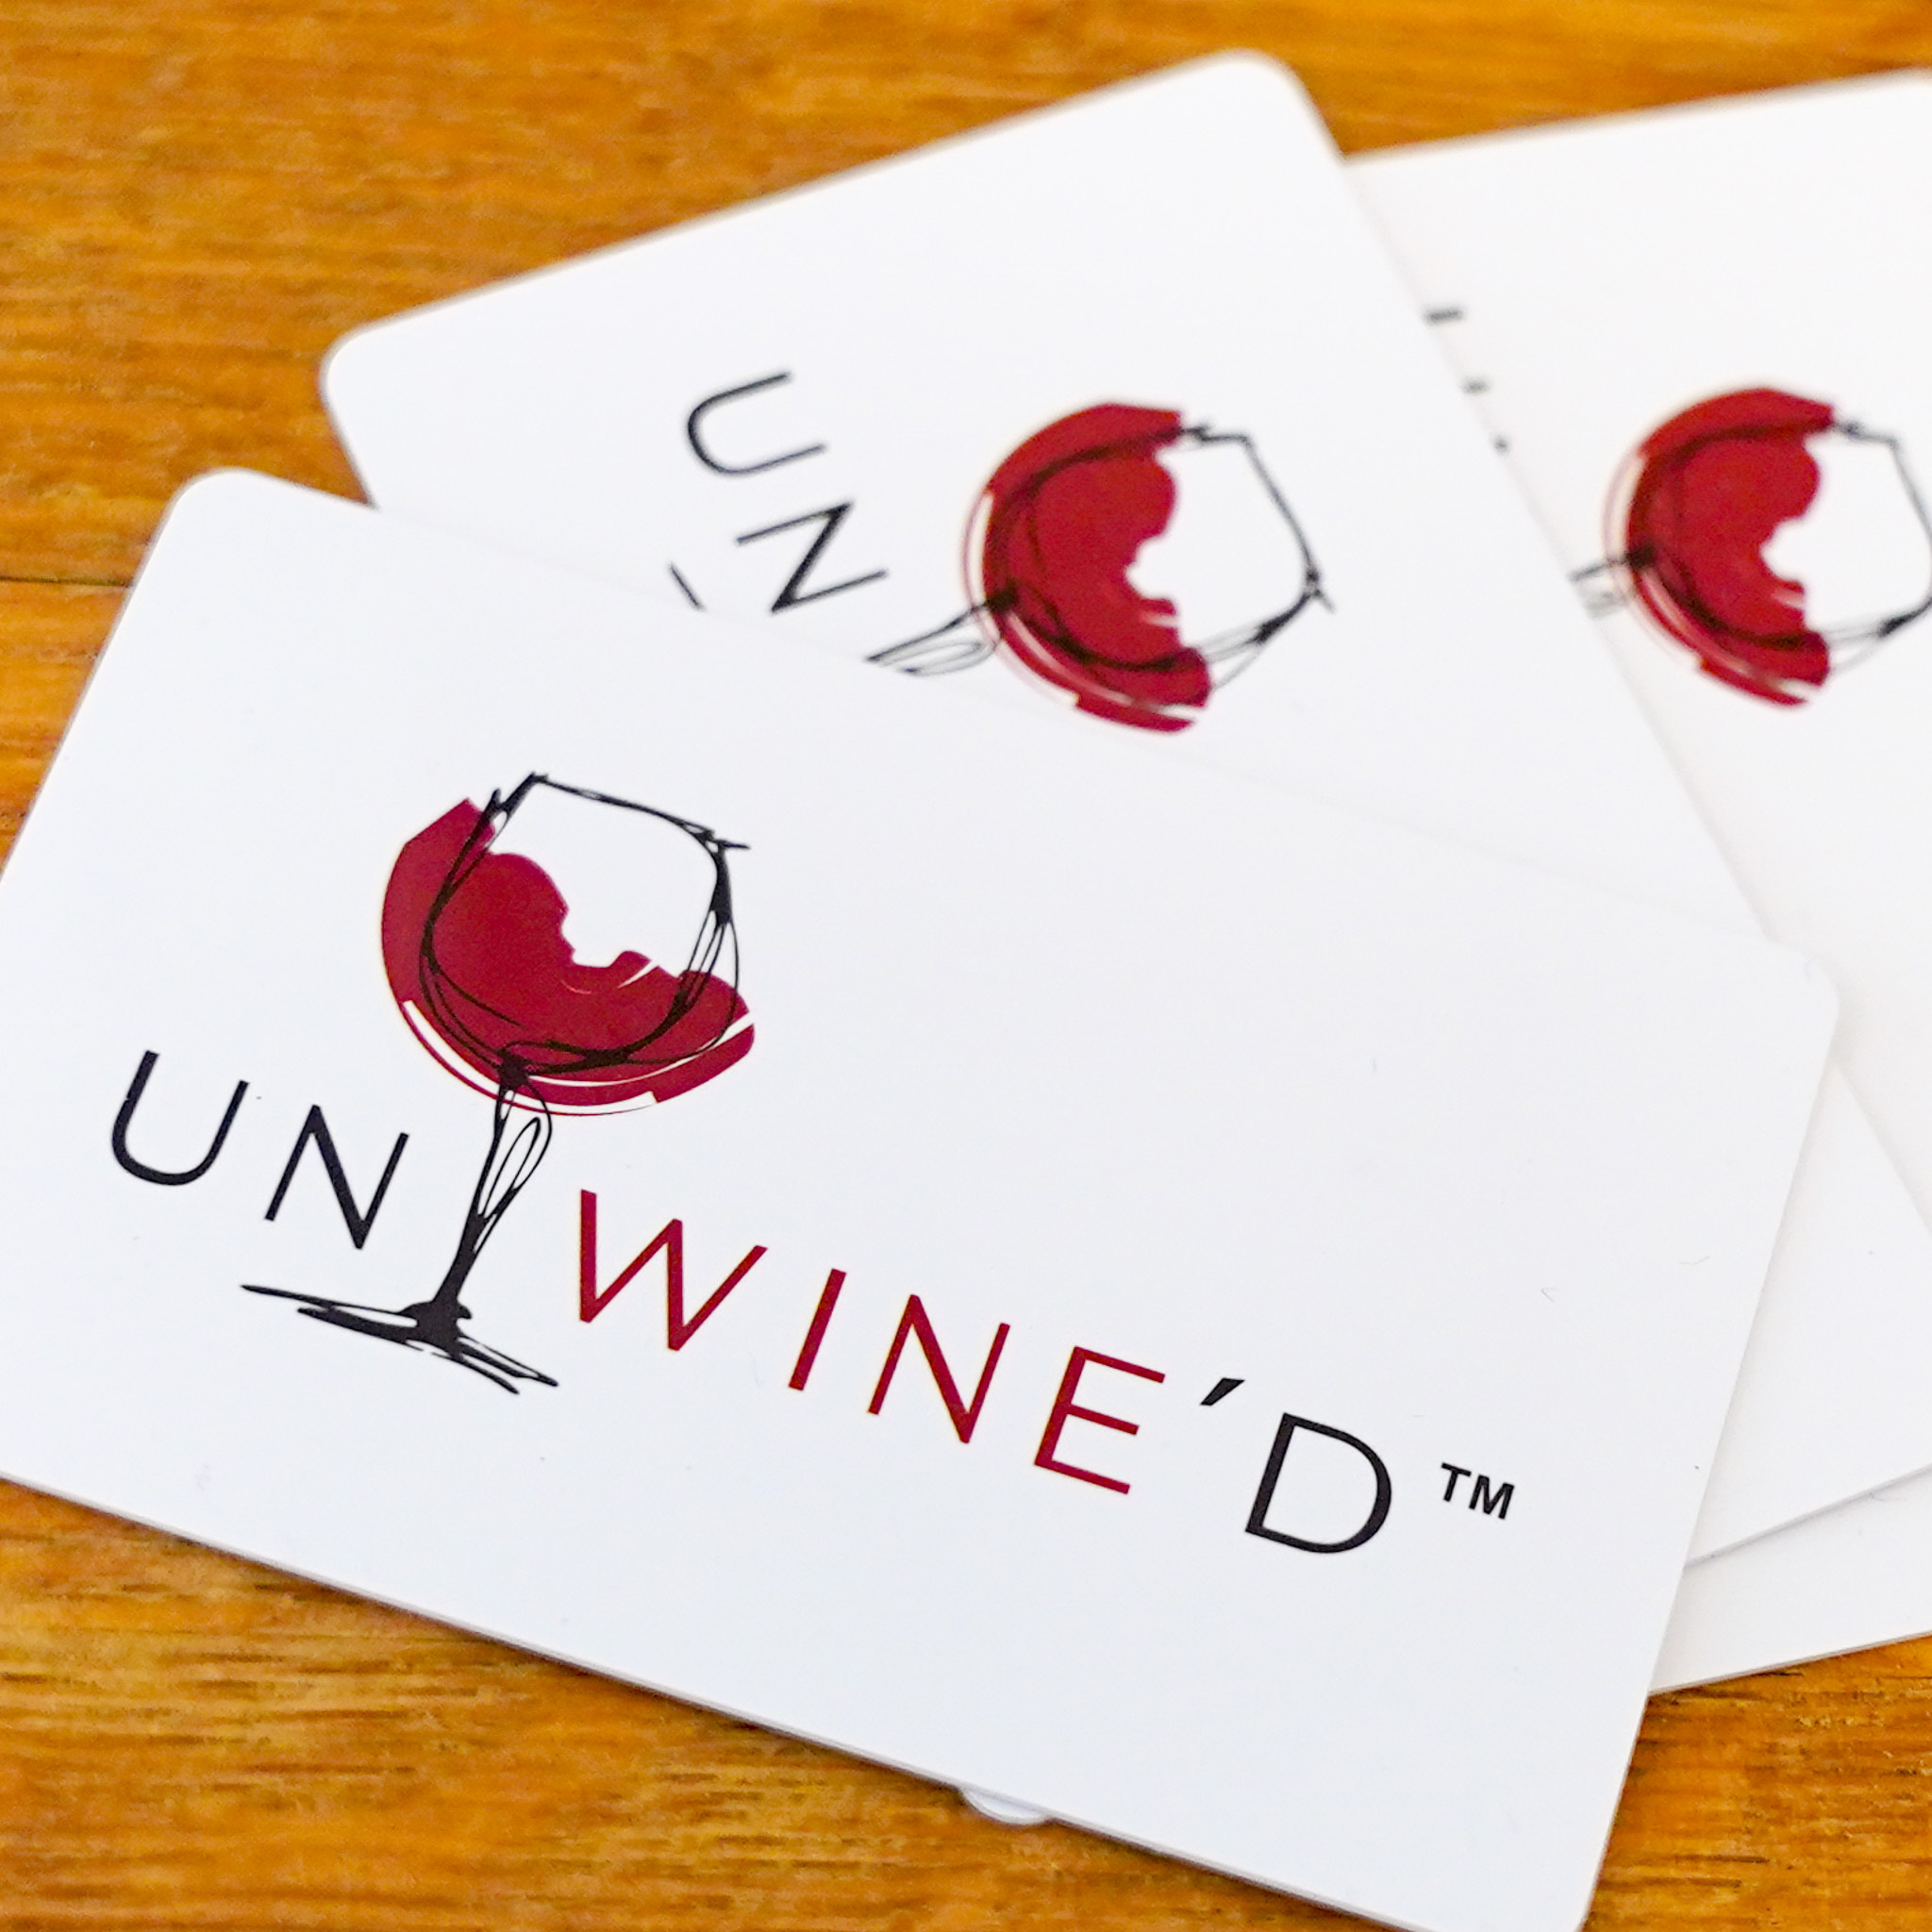 Unwine'd wine bar opens in Rochester NY. Take a peek inside